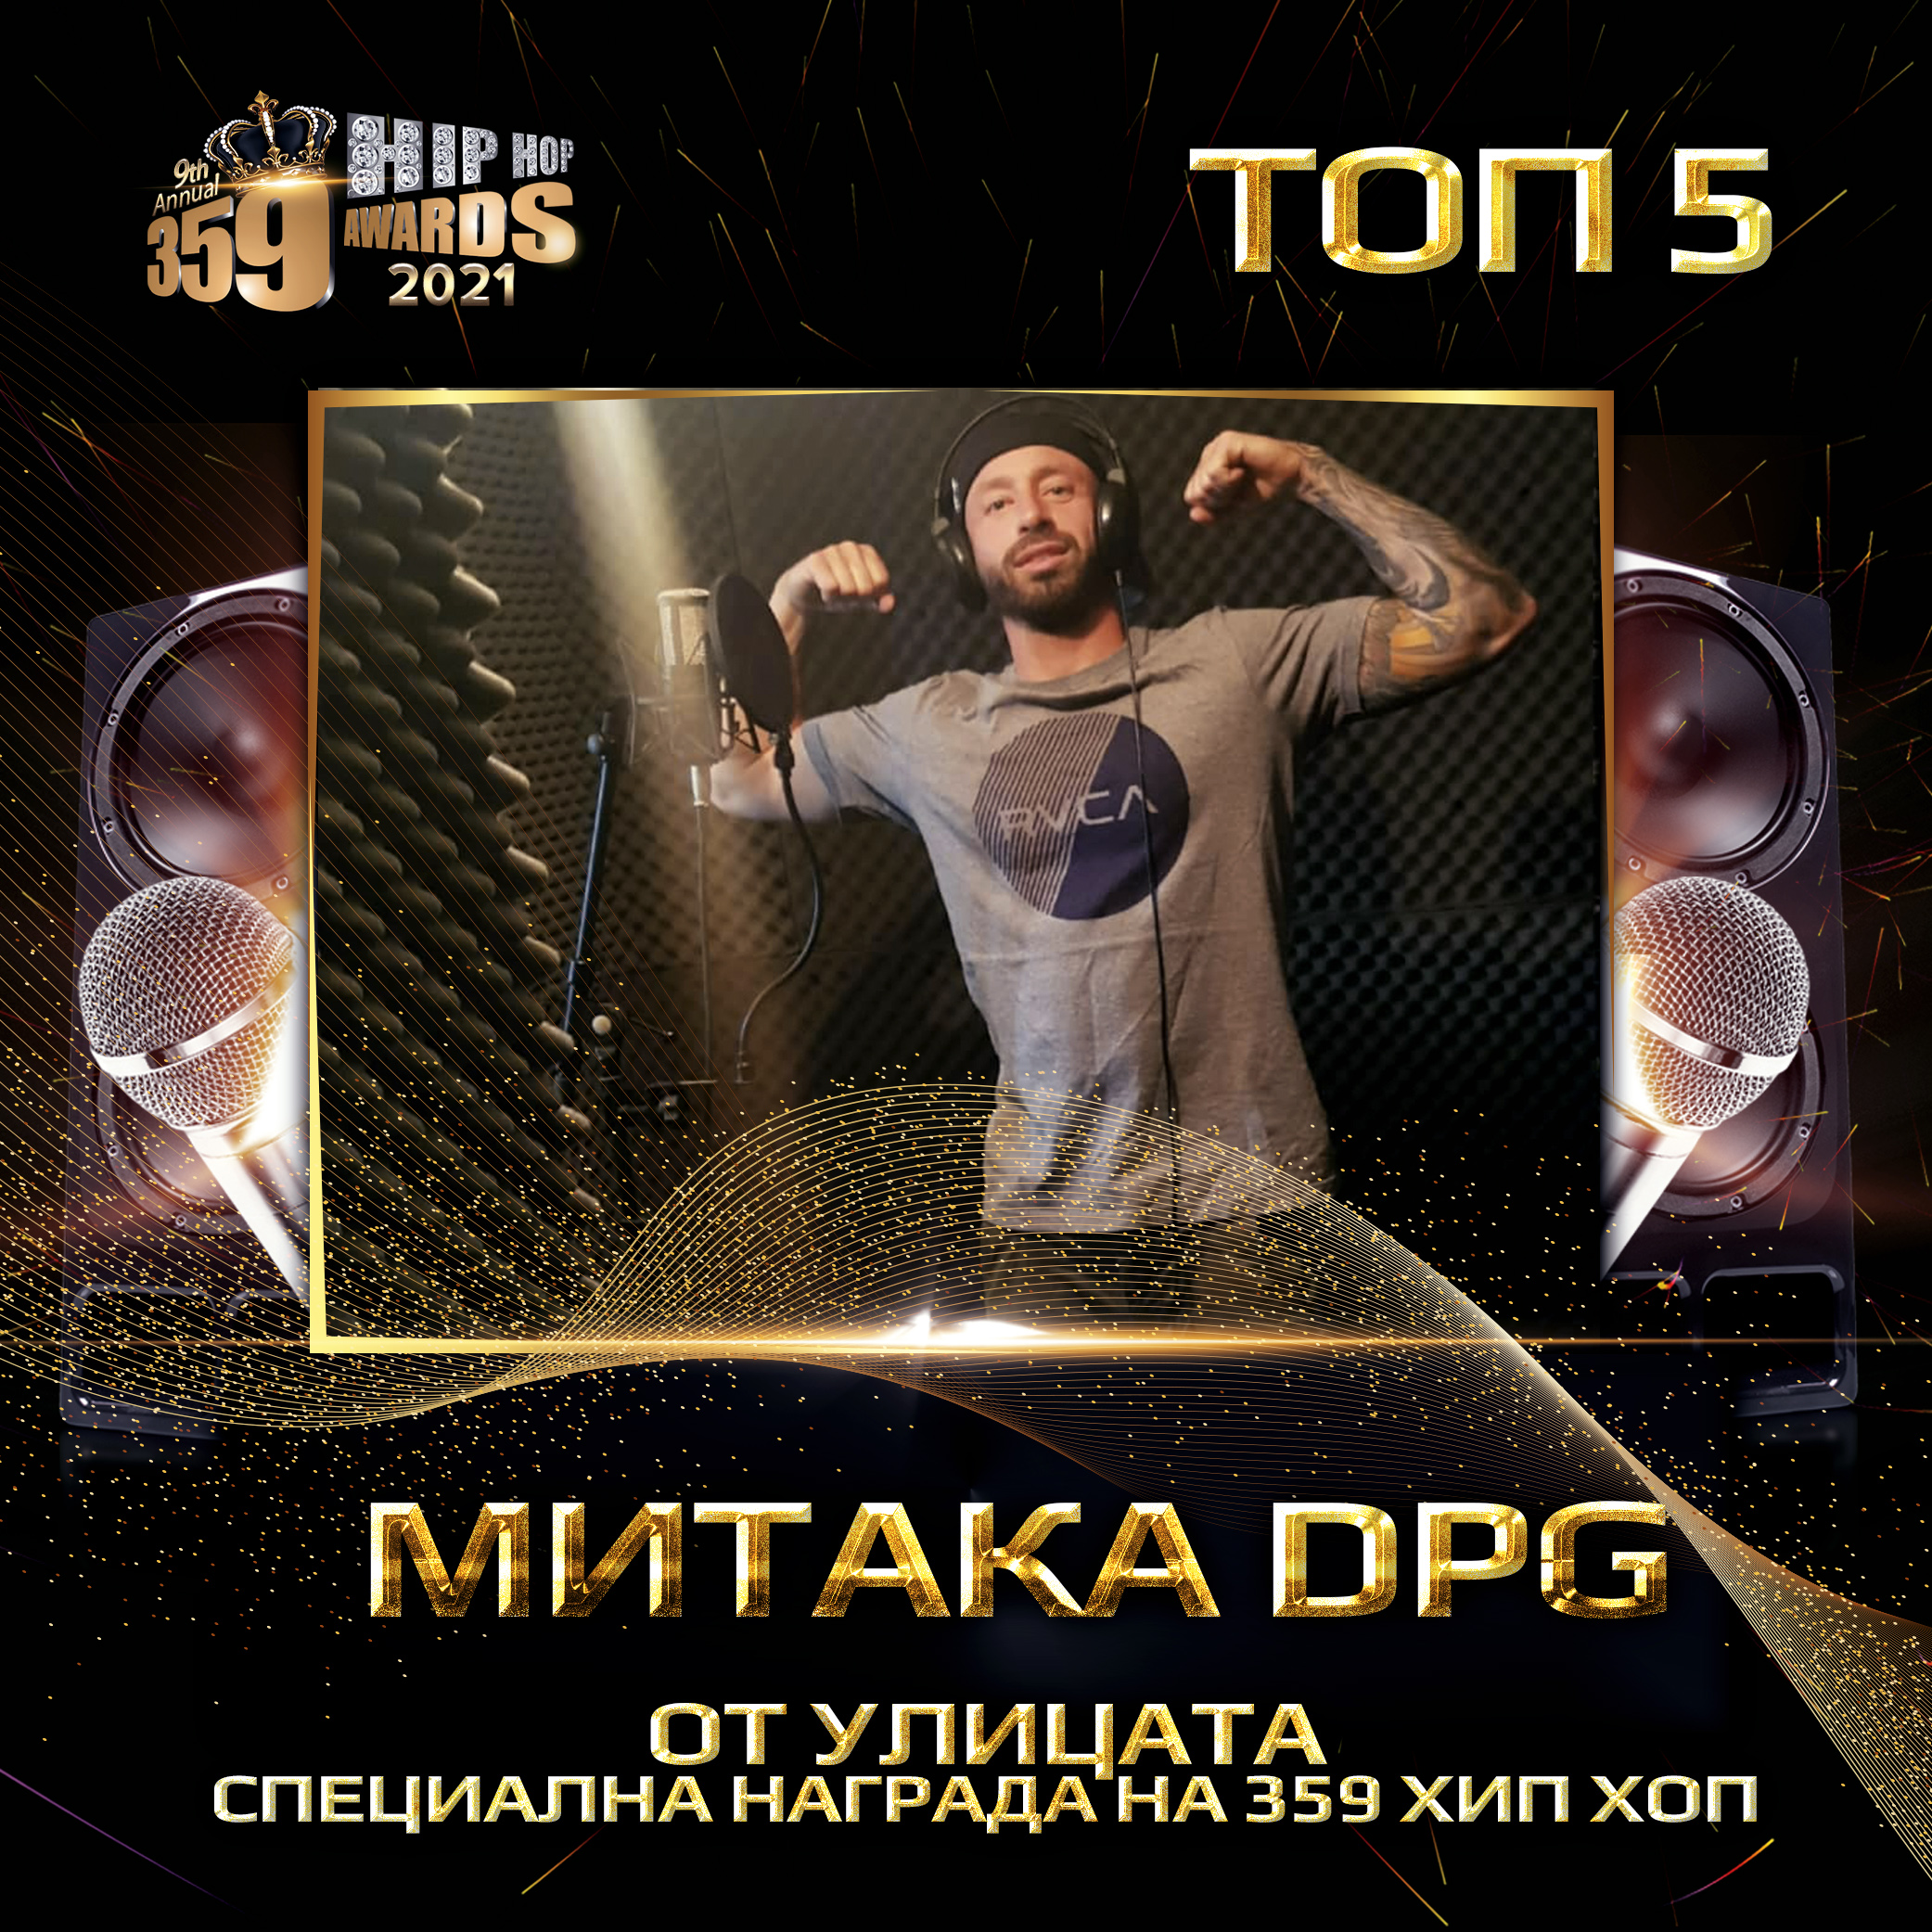 top 5  359 awards 2021 ot ulicata specialna nagrada na 359 hip hop  mitaka dpg - От Улицата за 2020